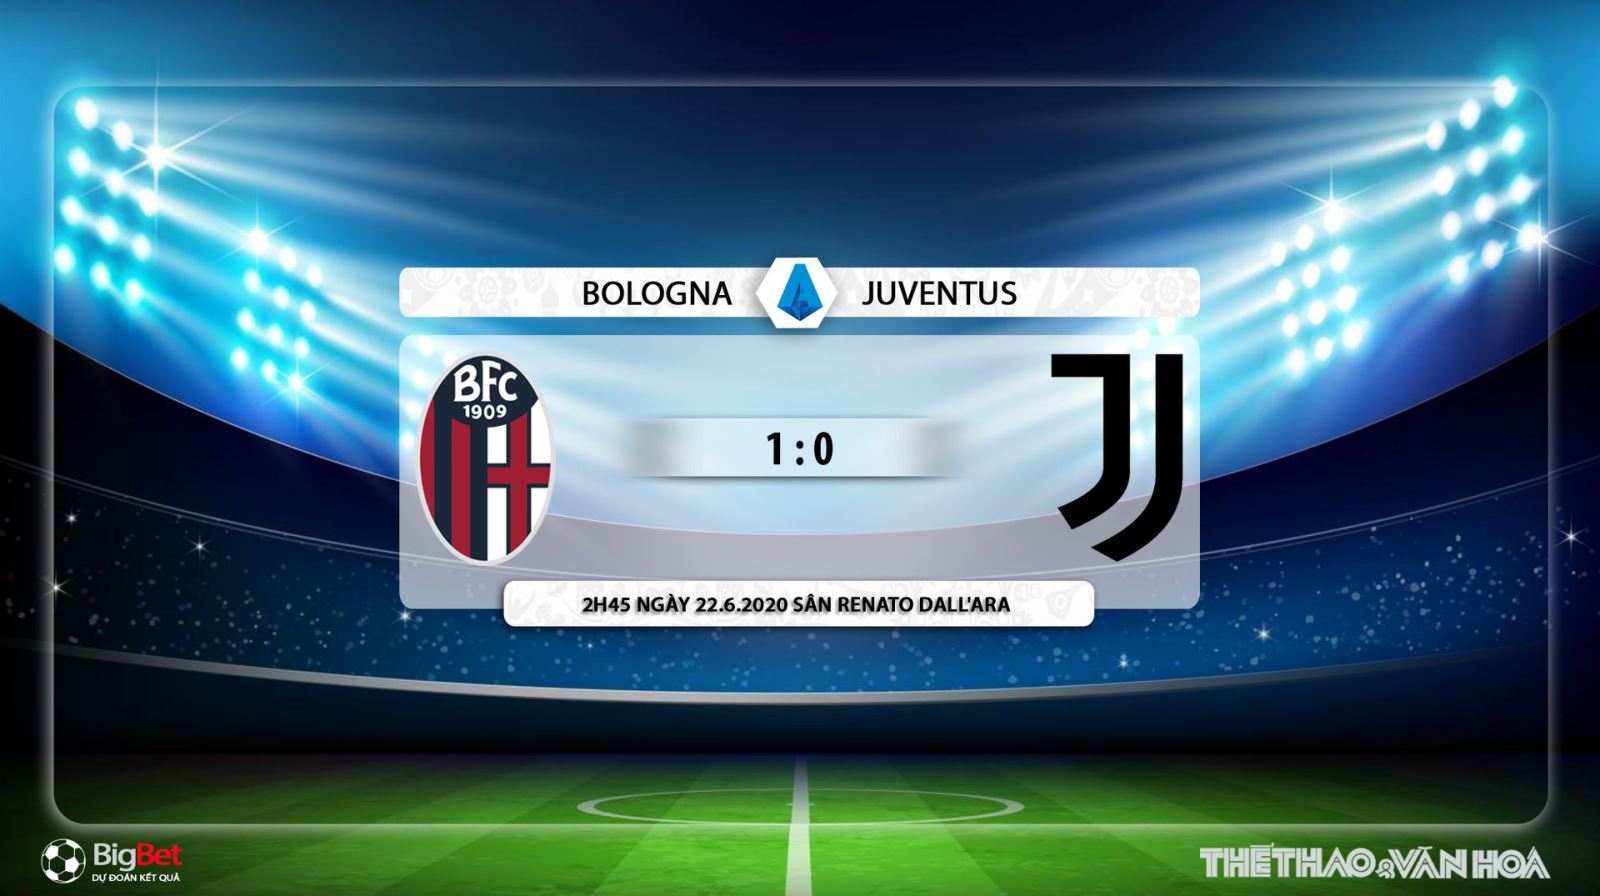 Bologna vs Juventus, Juvetus, Bologna, Bologna vs Juve, soi kèo, kèo bóng đá, trực tiếp, Juve, serie a, trực tiếp bóng đá, FPT Play